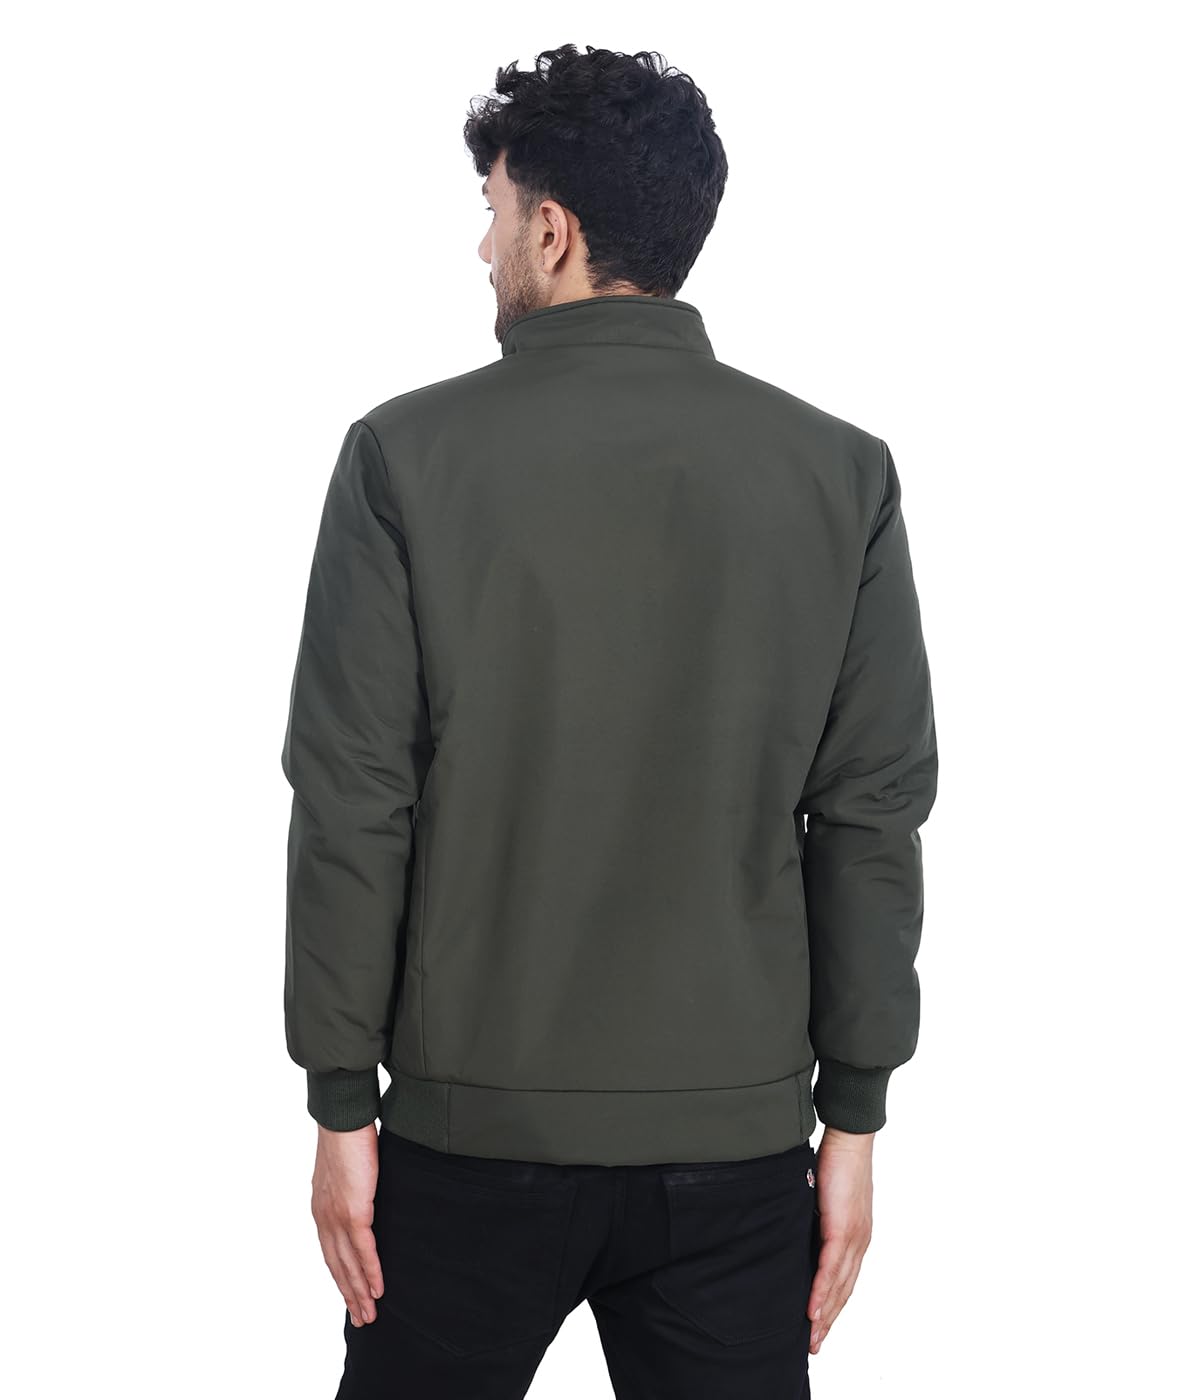 Dollar Jacket For Men Casual Zipper Bomber For Winter (Light Green) 